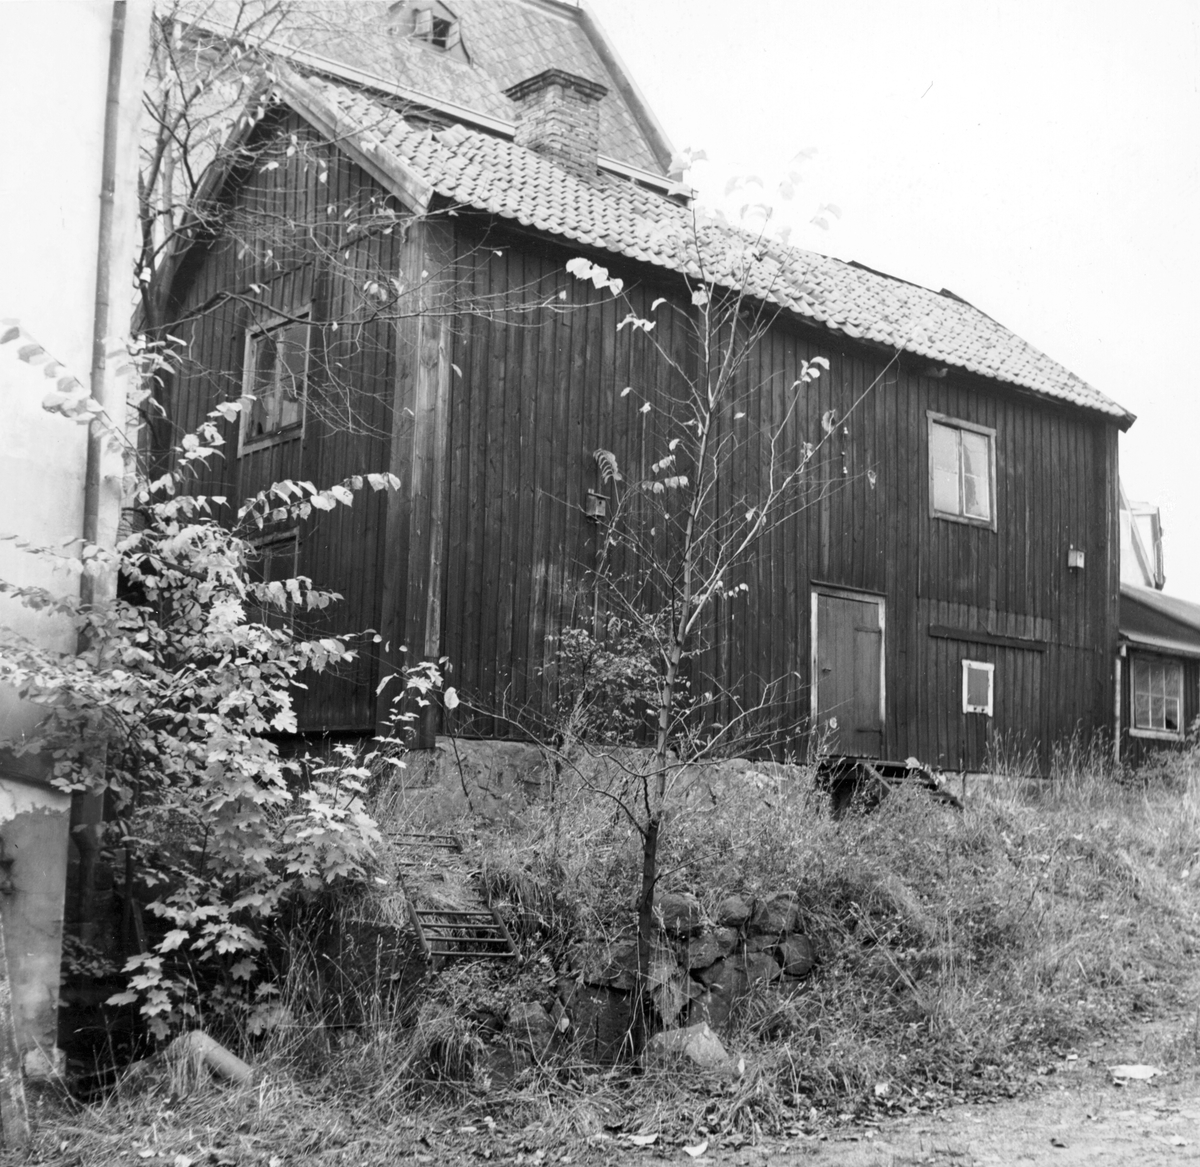 Gårdsinteriör från kvarteret Vårdtornet i Norrköping. I trähuset drev upplysningsvis skräddare Gottfrid Zetterstrand sin verkstad under 1800-talet. Zetterstrand är ett av många exempel på hantverkare som var verksamma i området på 1700- och 1800-talen. Stadsdelen runt kvarteret Vårdtornet har medeltida härkomst och kallades i folkmun Midtina för sitt centrala läge. Bilden är tagen 1957 i samband med rivningsansökan. Vy mot nordväst.